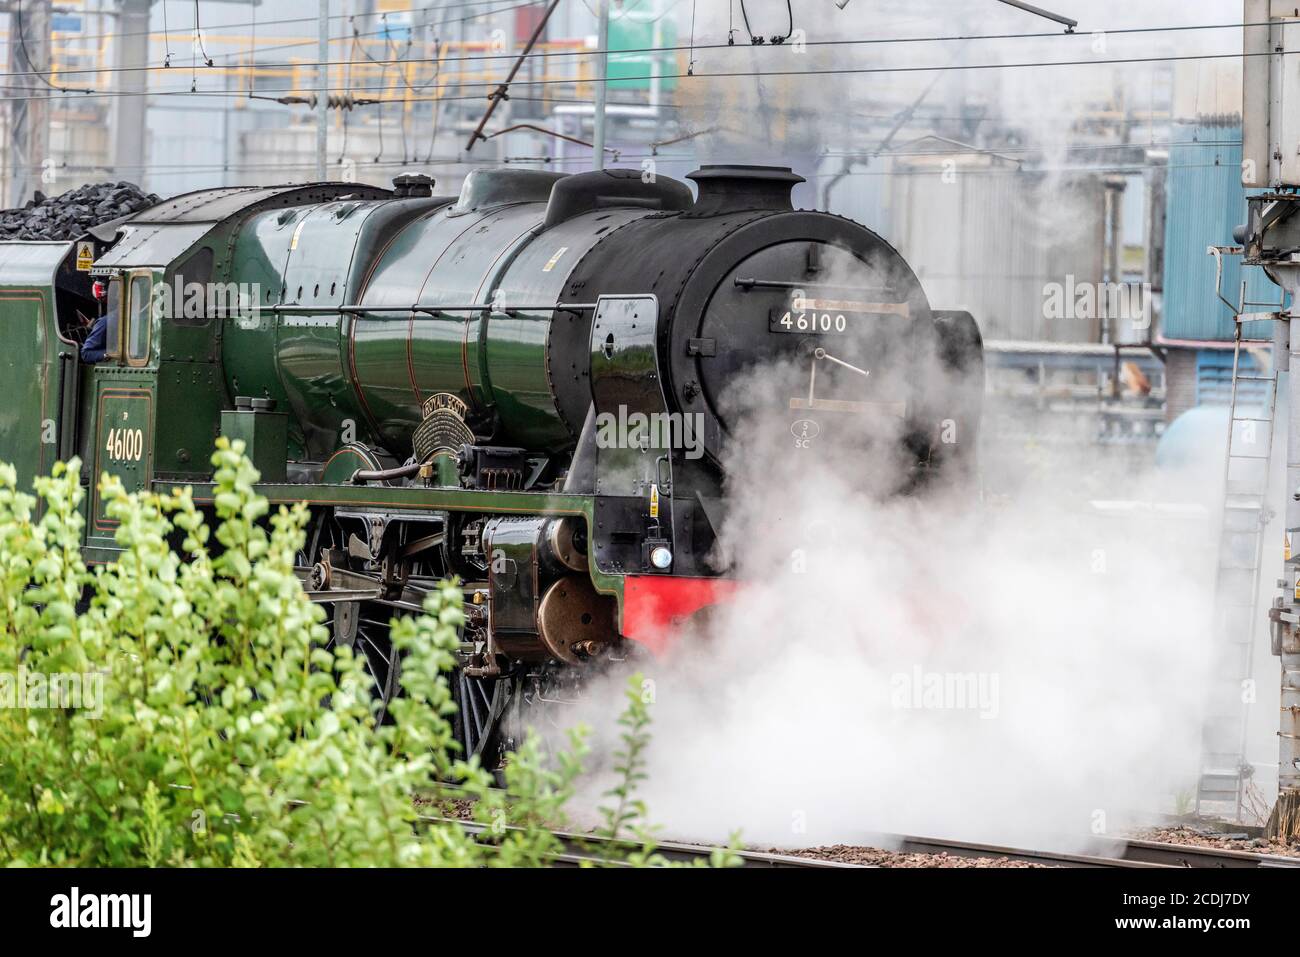 La locomotora de vapor de clase 6100 de Royal Scot en la estación de Warrington Bank Quay mientras railtours se reabre después del cierre de Covid. Foto de stock